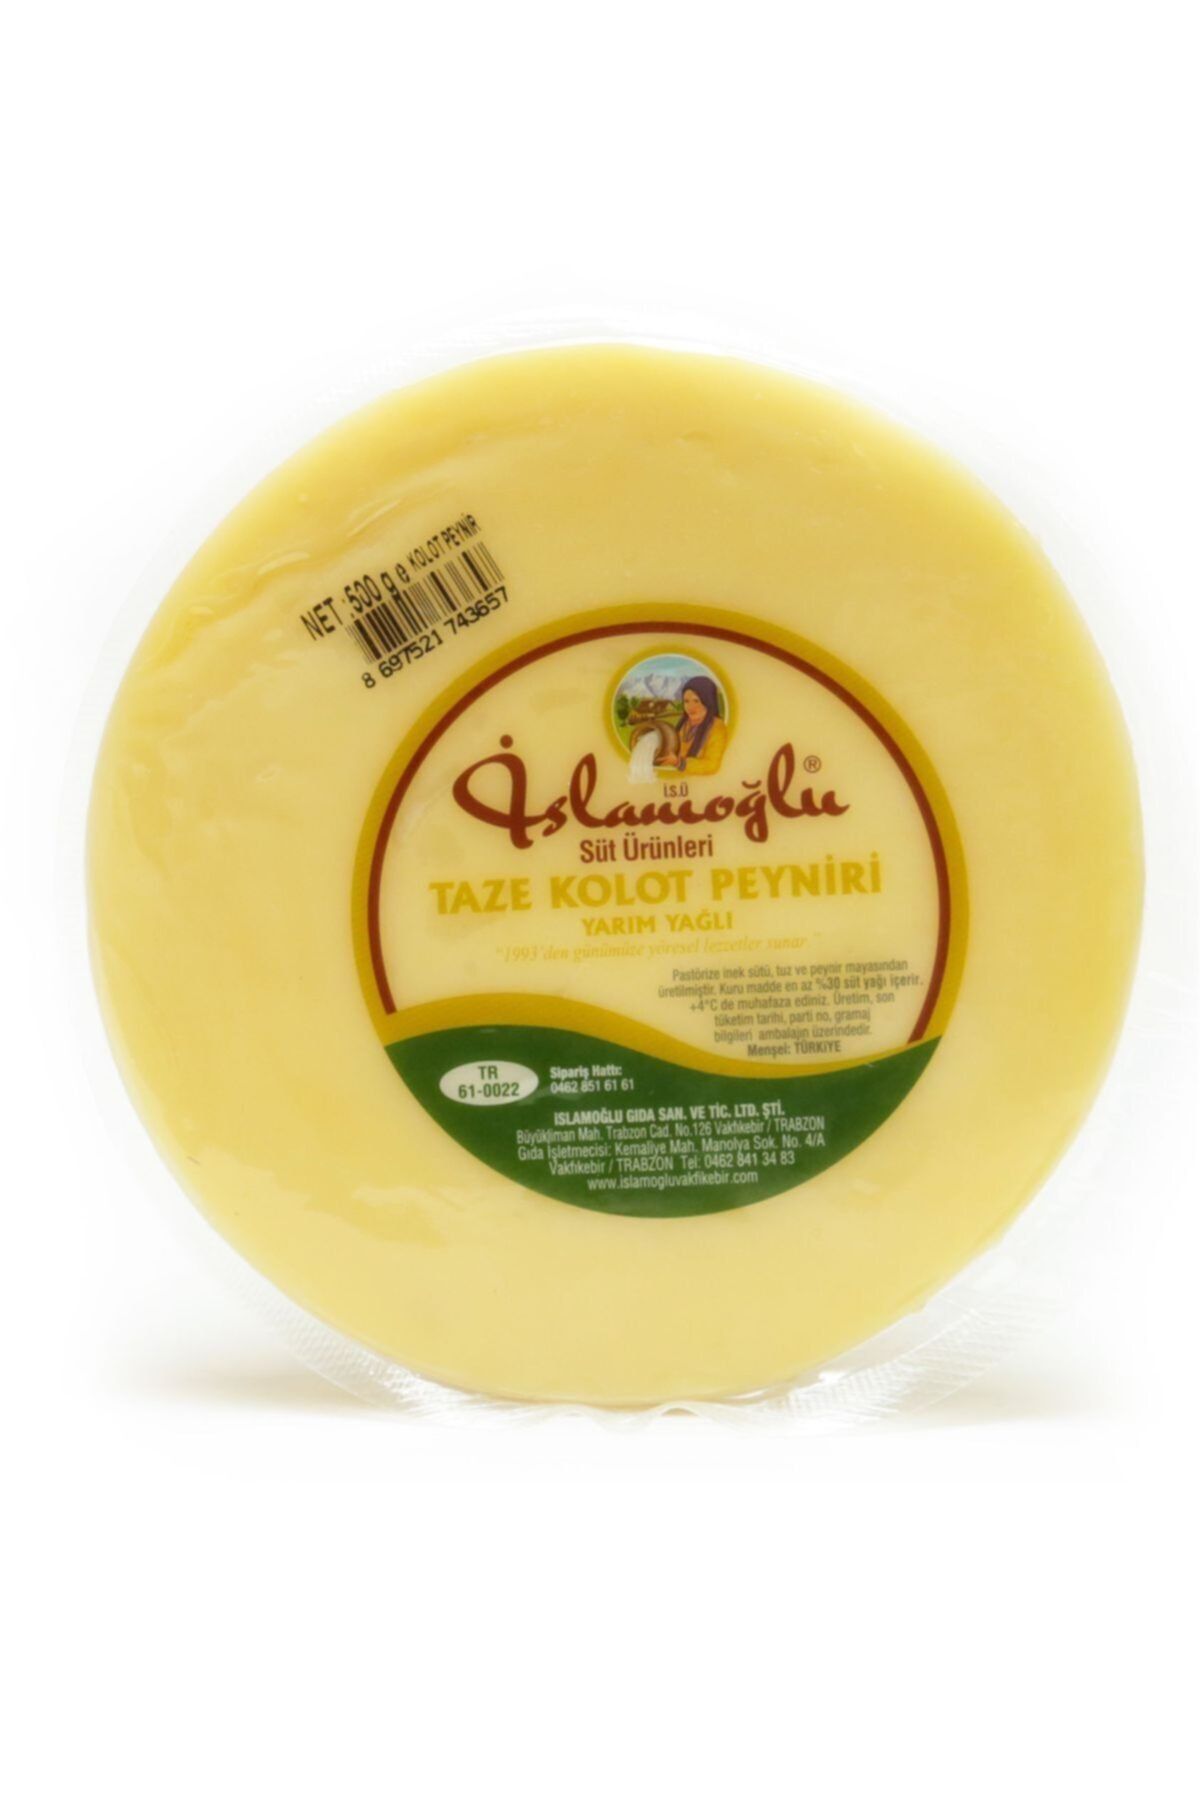 İSLAMOĞLU GIDA Islamoğlu Kolot Peyniri - 500 Gr